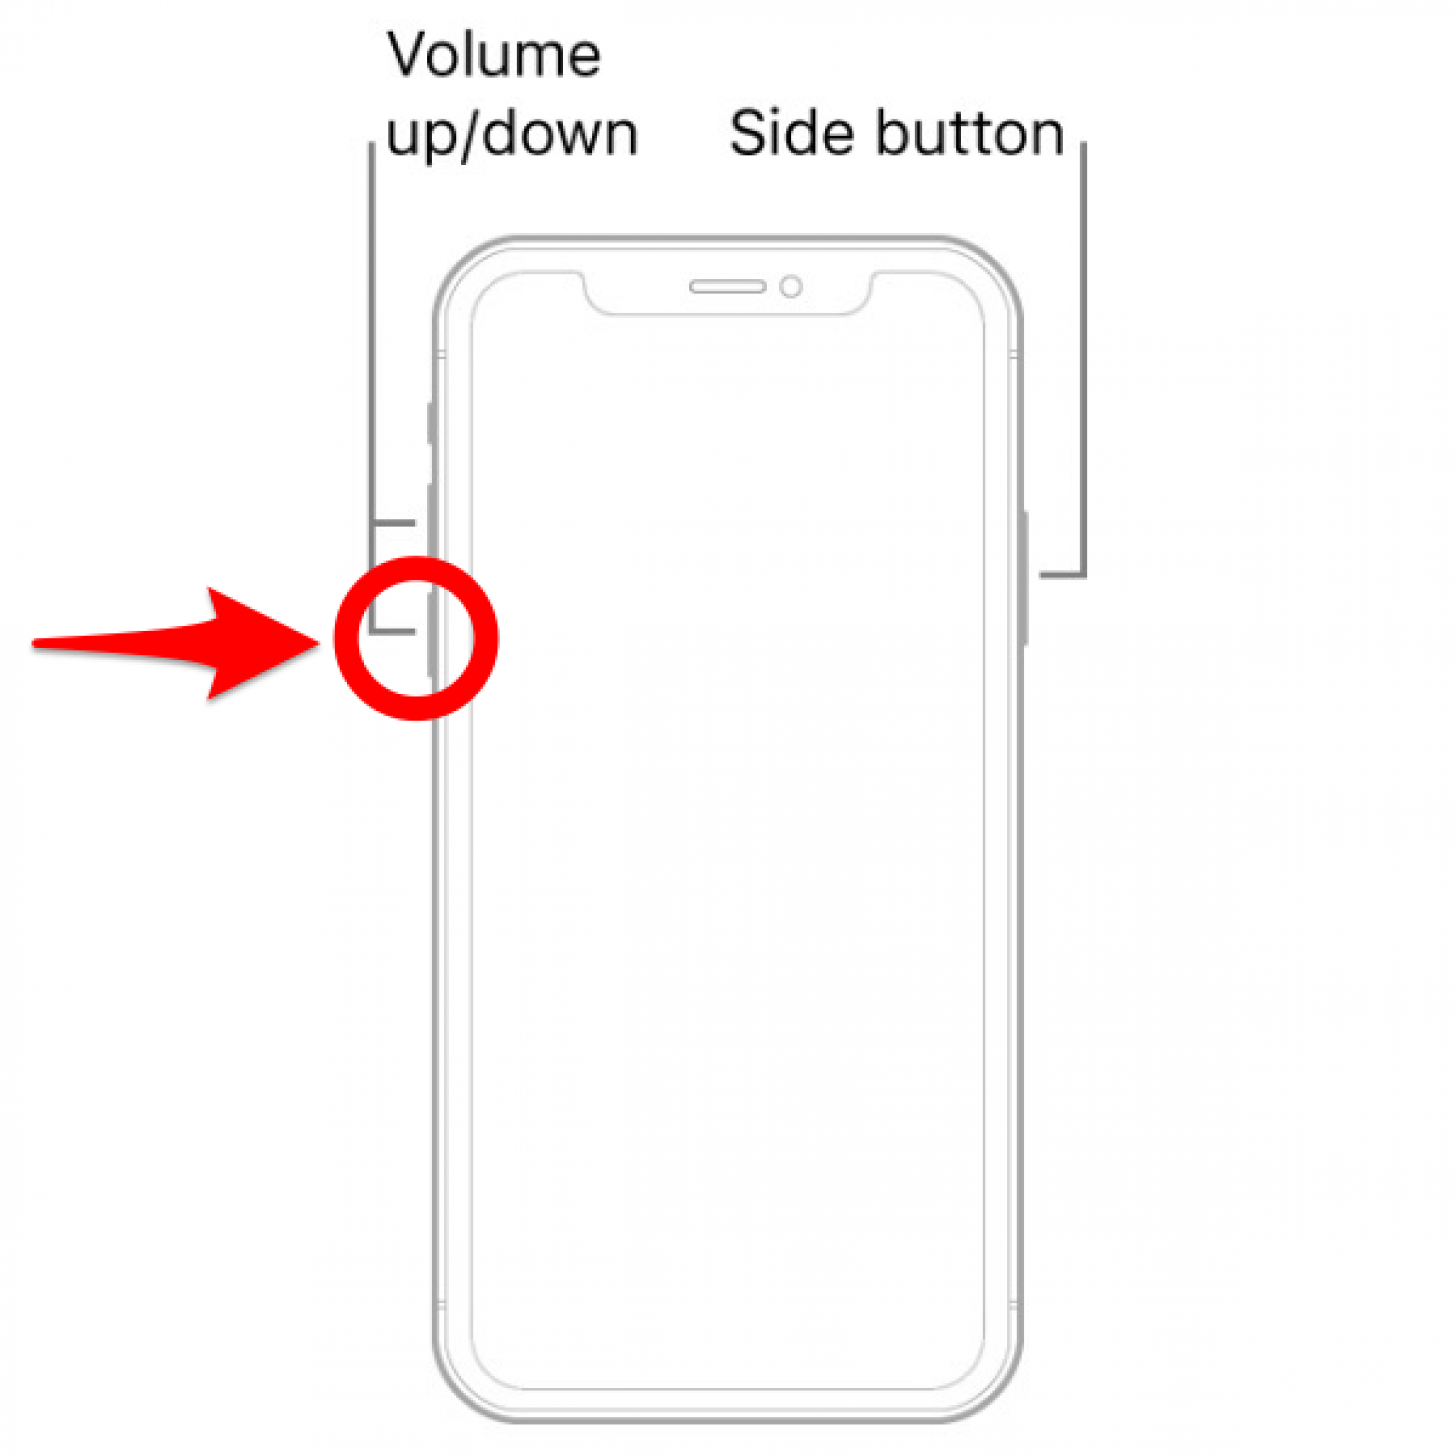 Presione el botón para bajar el volumen y suéltelo rápidamente: cómo apagar por completo el iPhone x